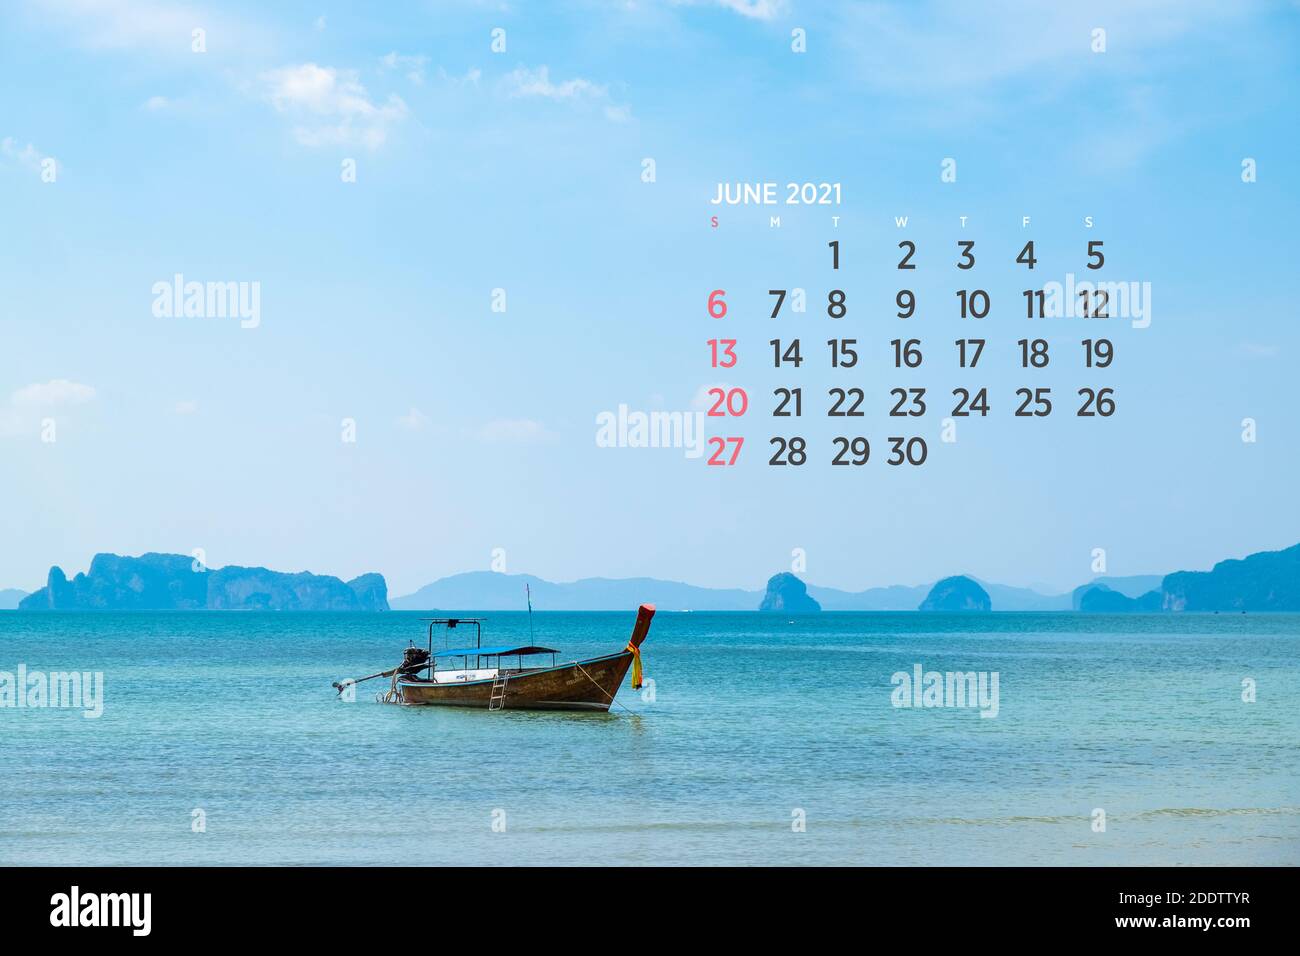 Calendar June 2021. Sea, ocean, beach, tropical, nature theme. A2. 60 x 40 cm. 15.75 x 23.62 inches Stock Photo